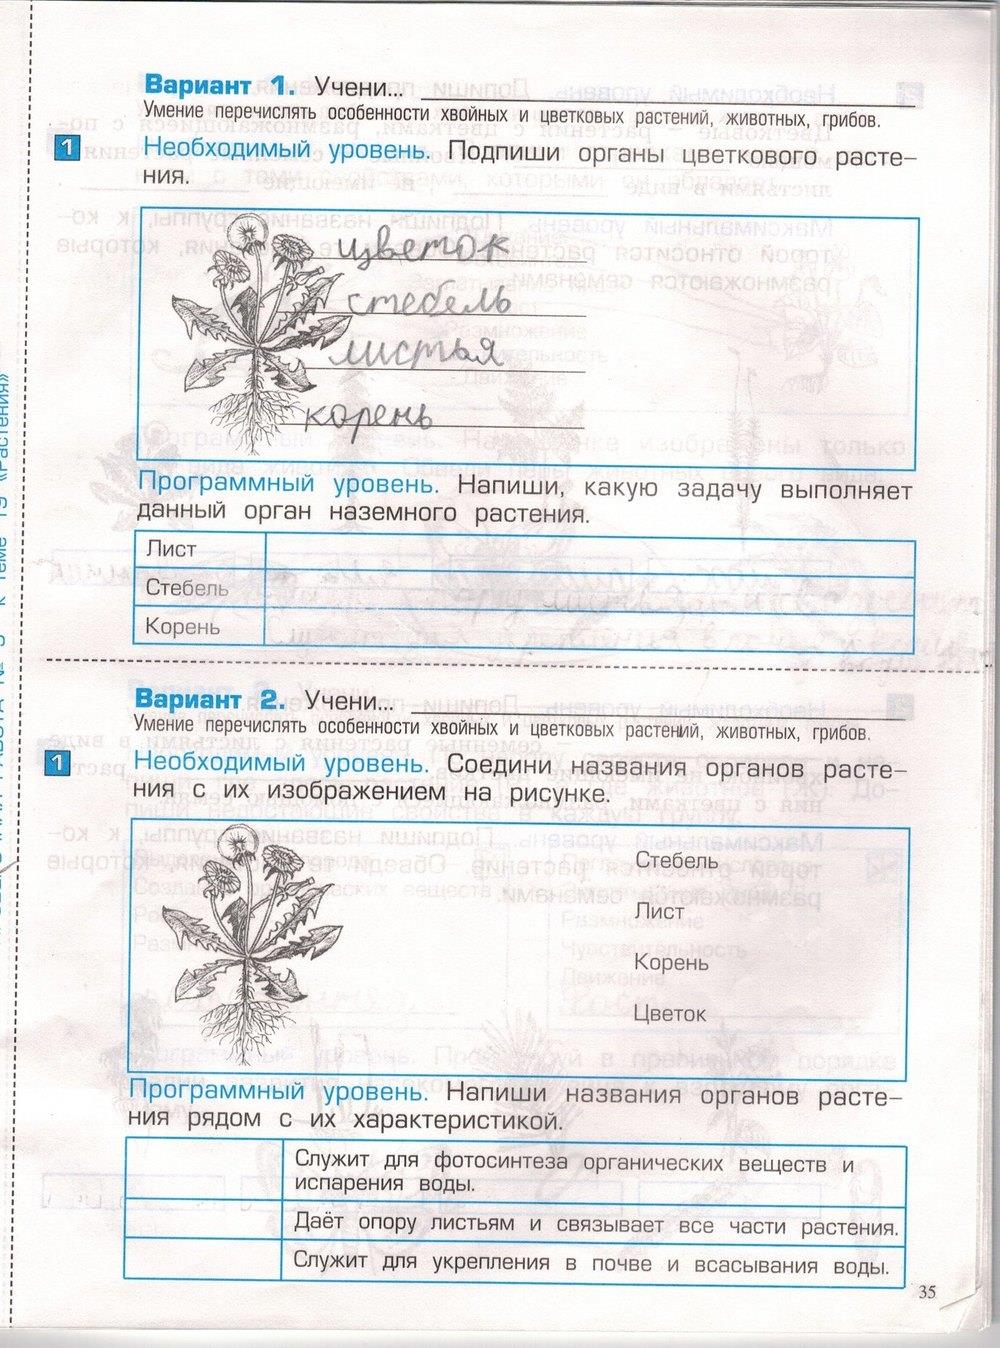 гдз 3 класс проверочные и контрольные работы часть 1 страница 35 окружающий мир Вахрушев, Бурский, Родыгина